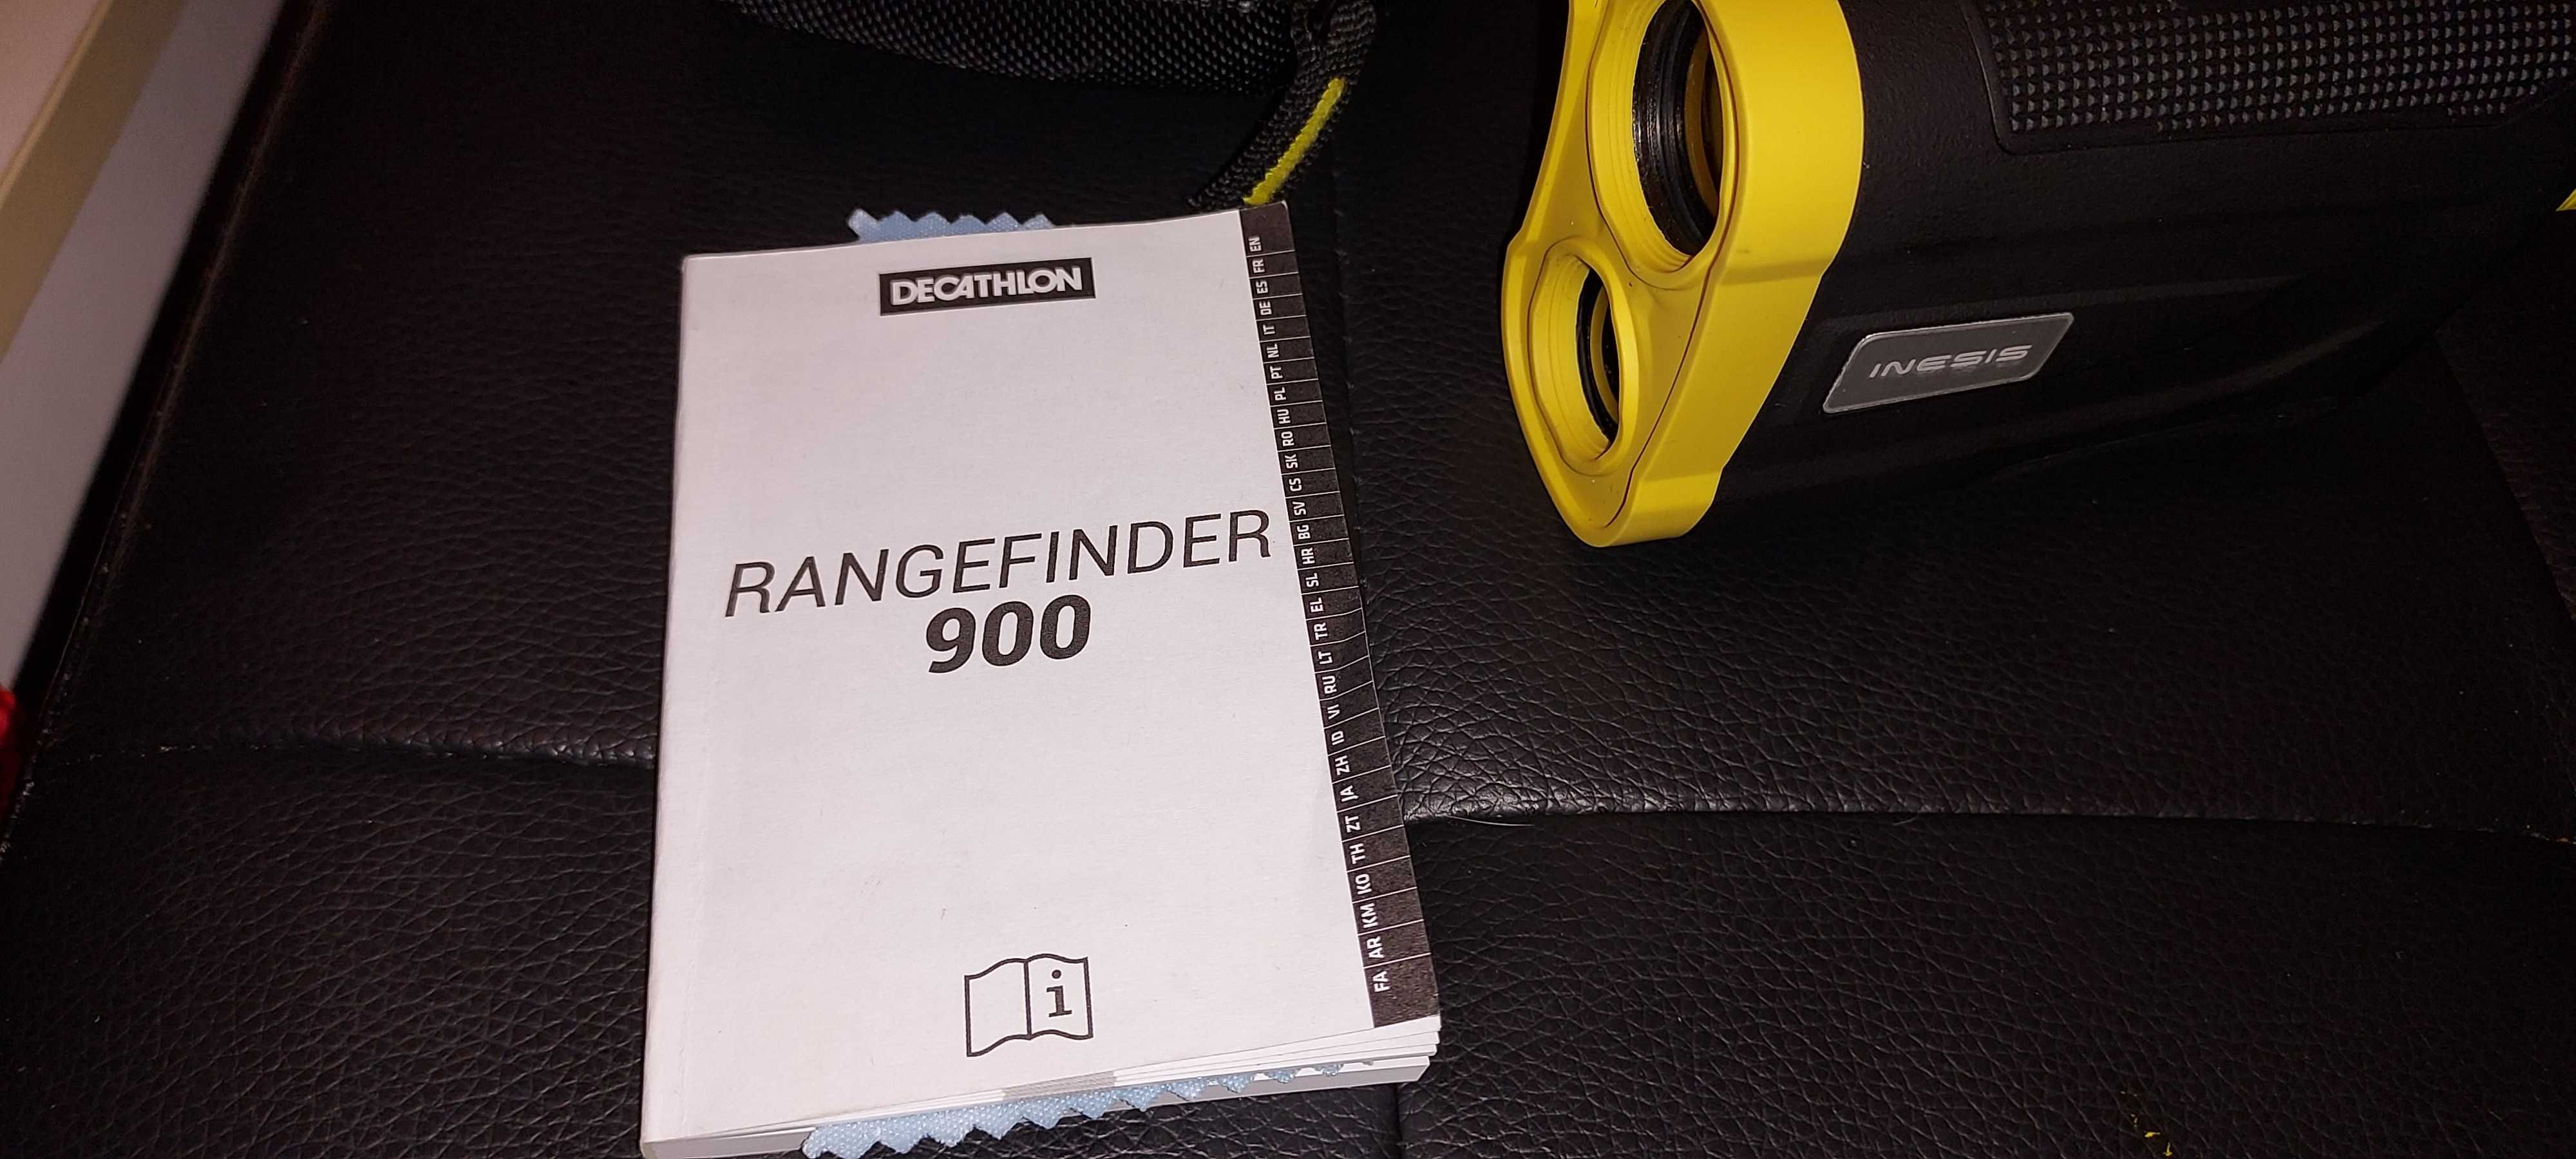 INESIS 900 rangefinder